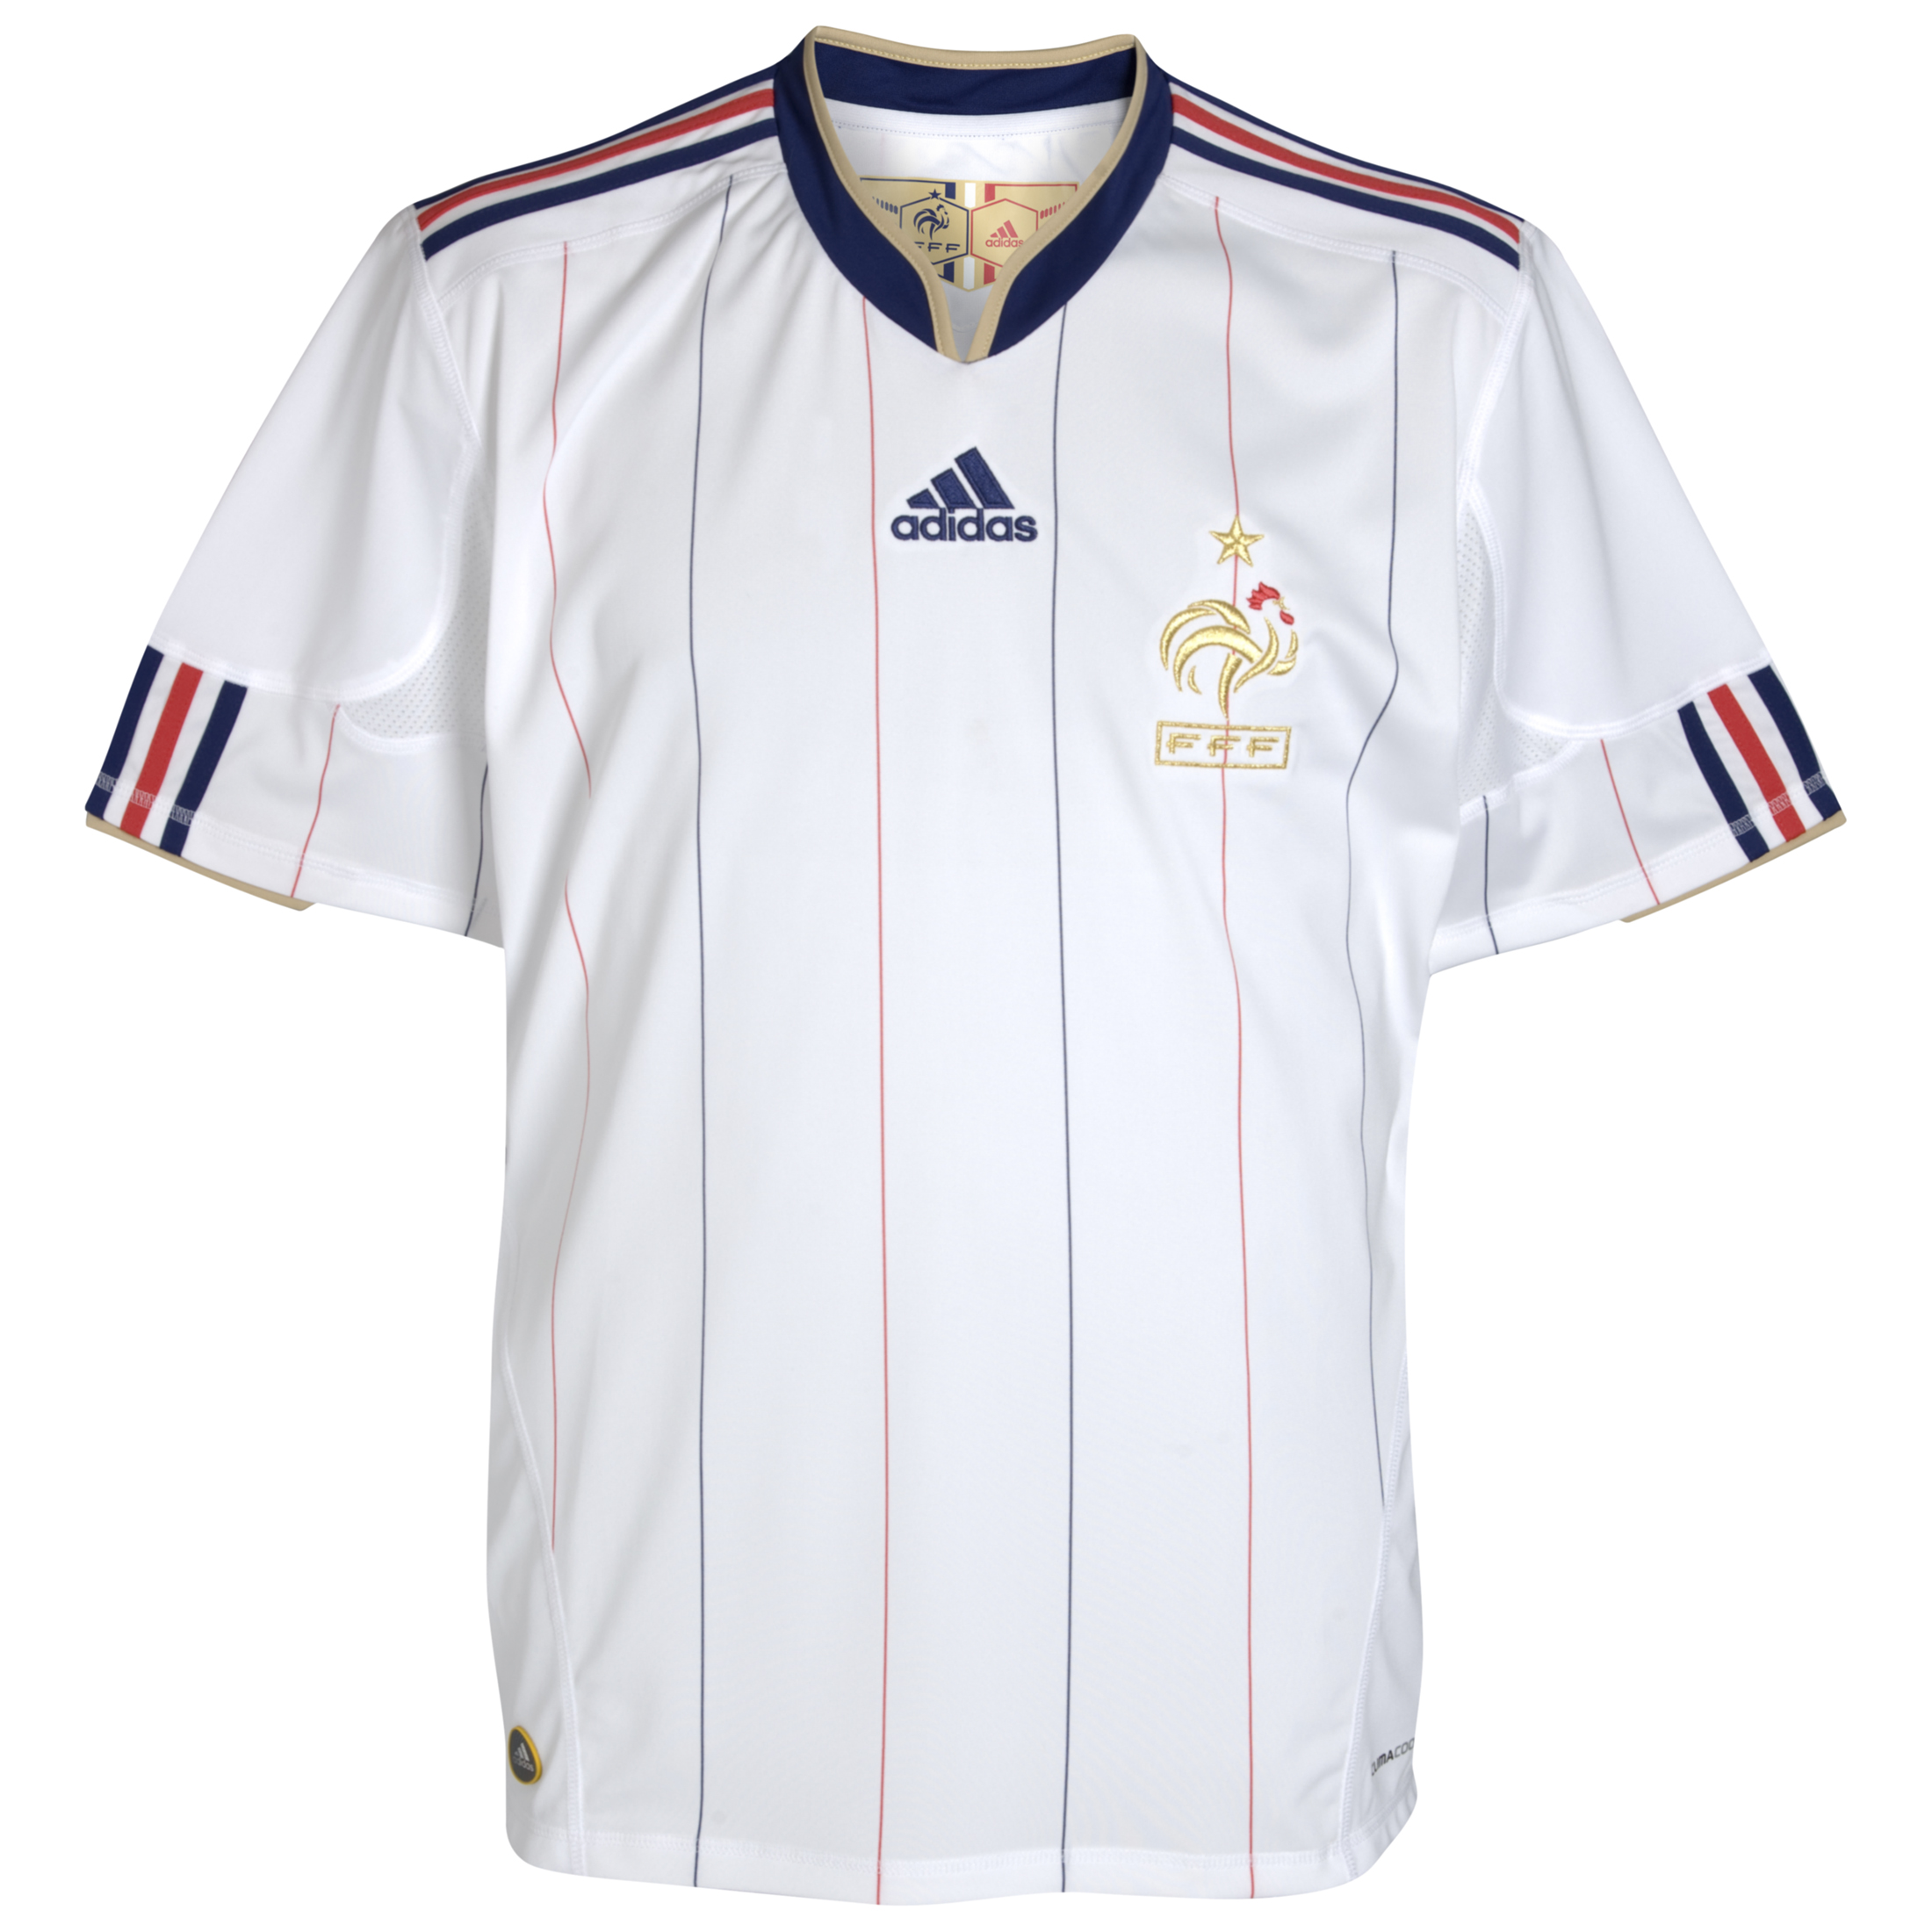 الملابس الخاصة بالمنتخبات في كأس العالم (جنوب أفريقيا 2010) Kb-66928